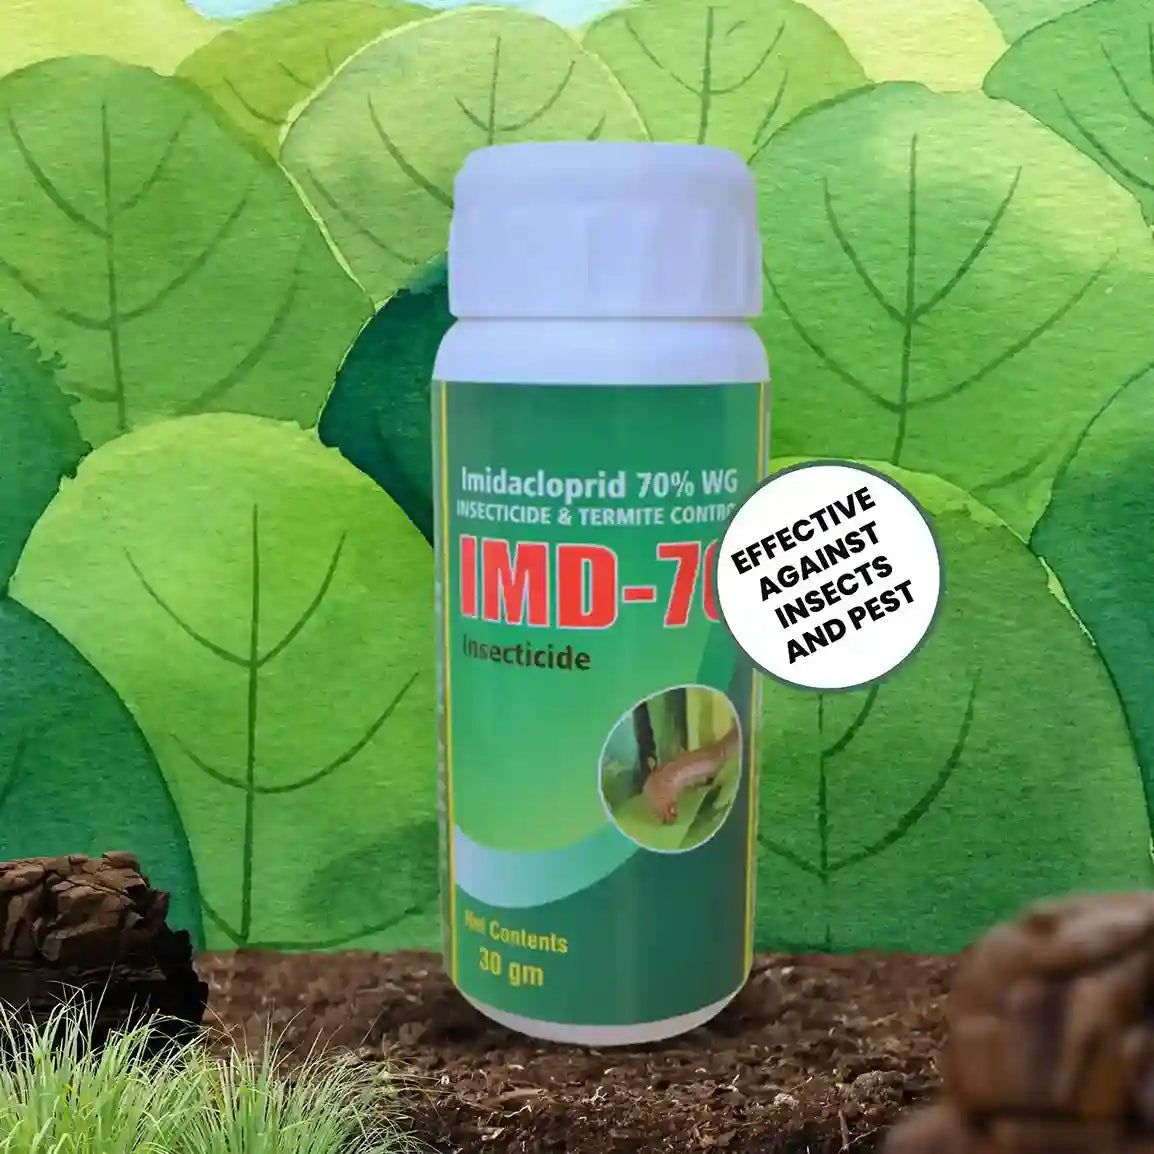 IMD-70 Imidacloprid 70% WG